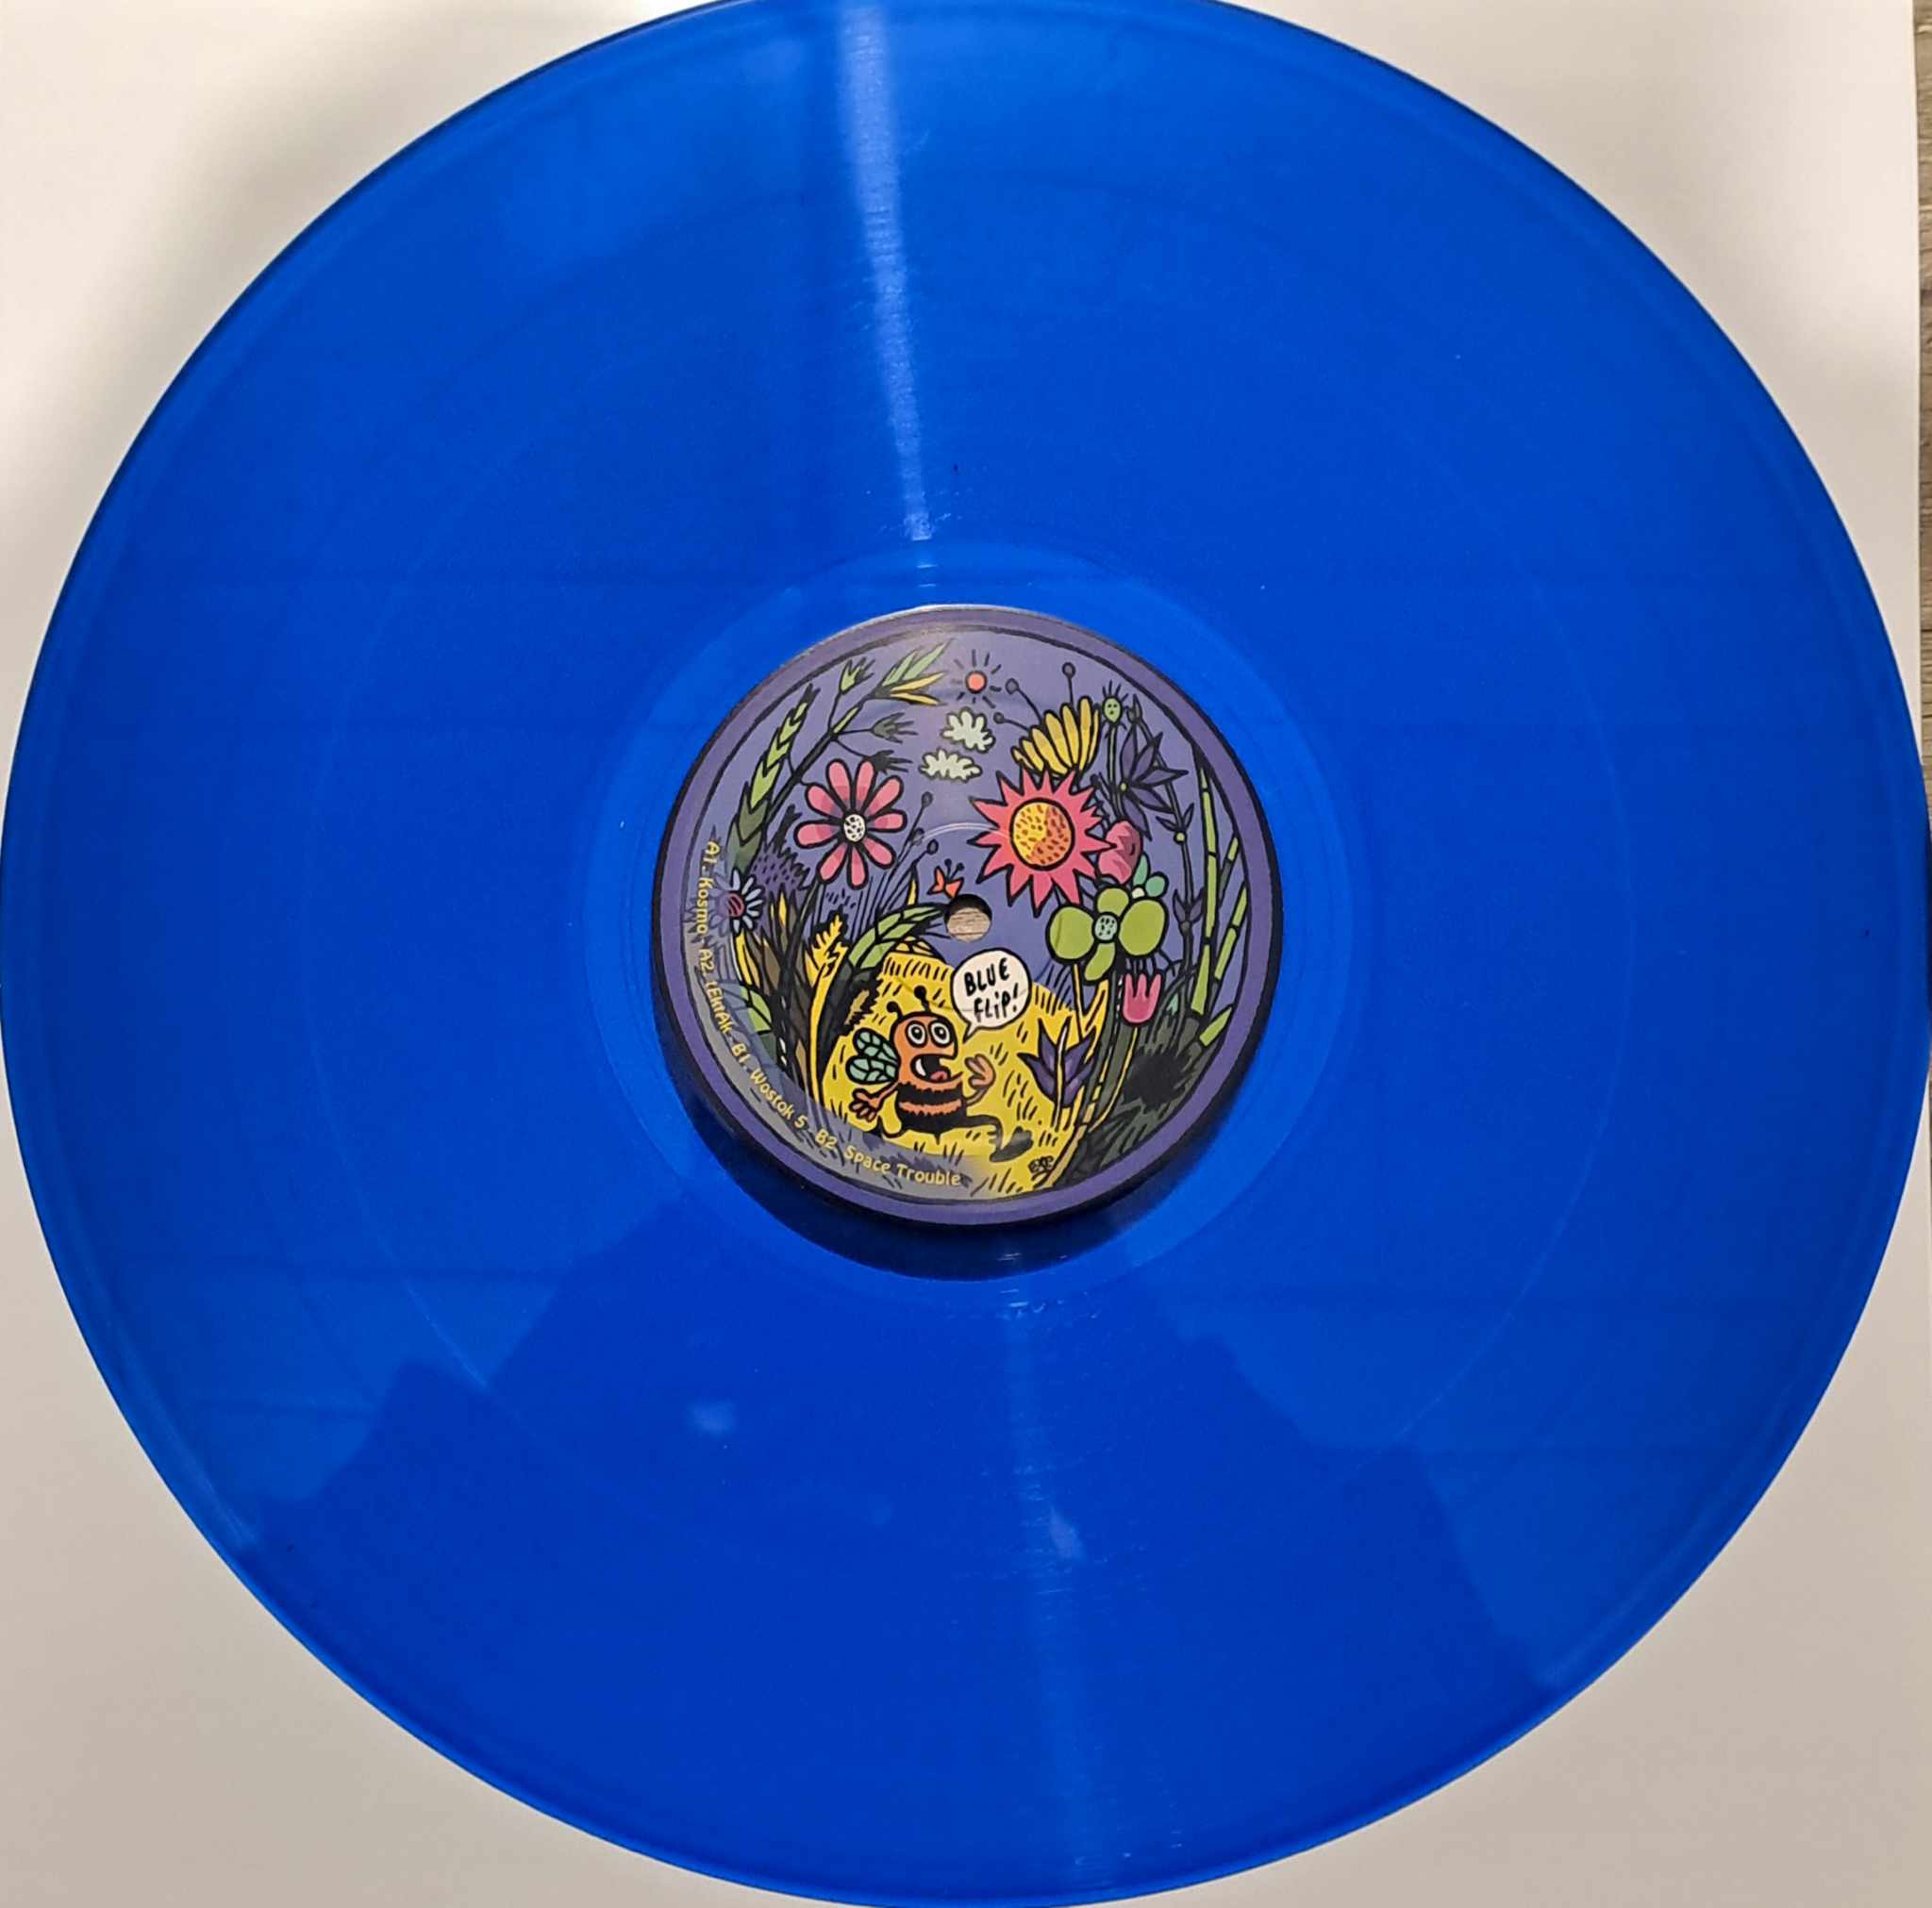 Peur Bleue 25 - vinyle freetekno